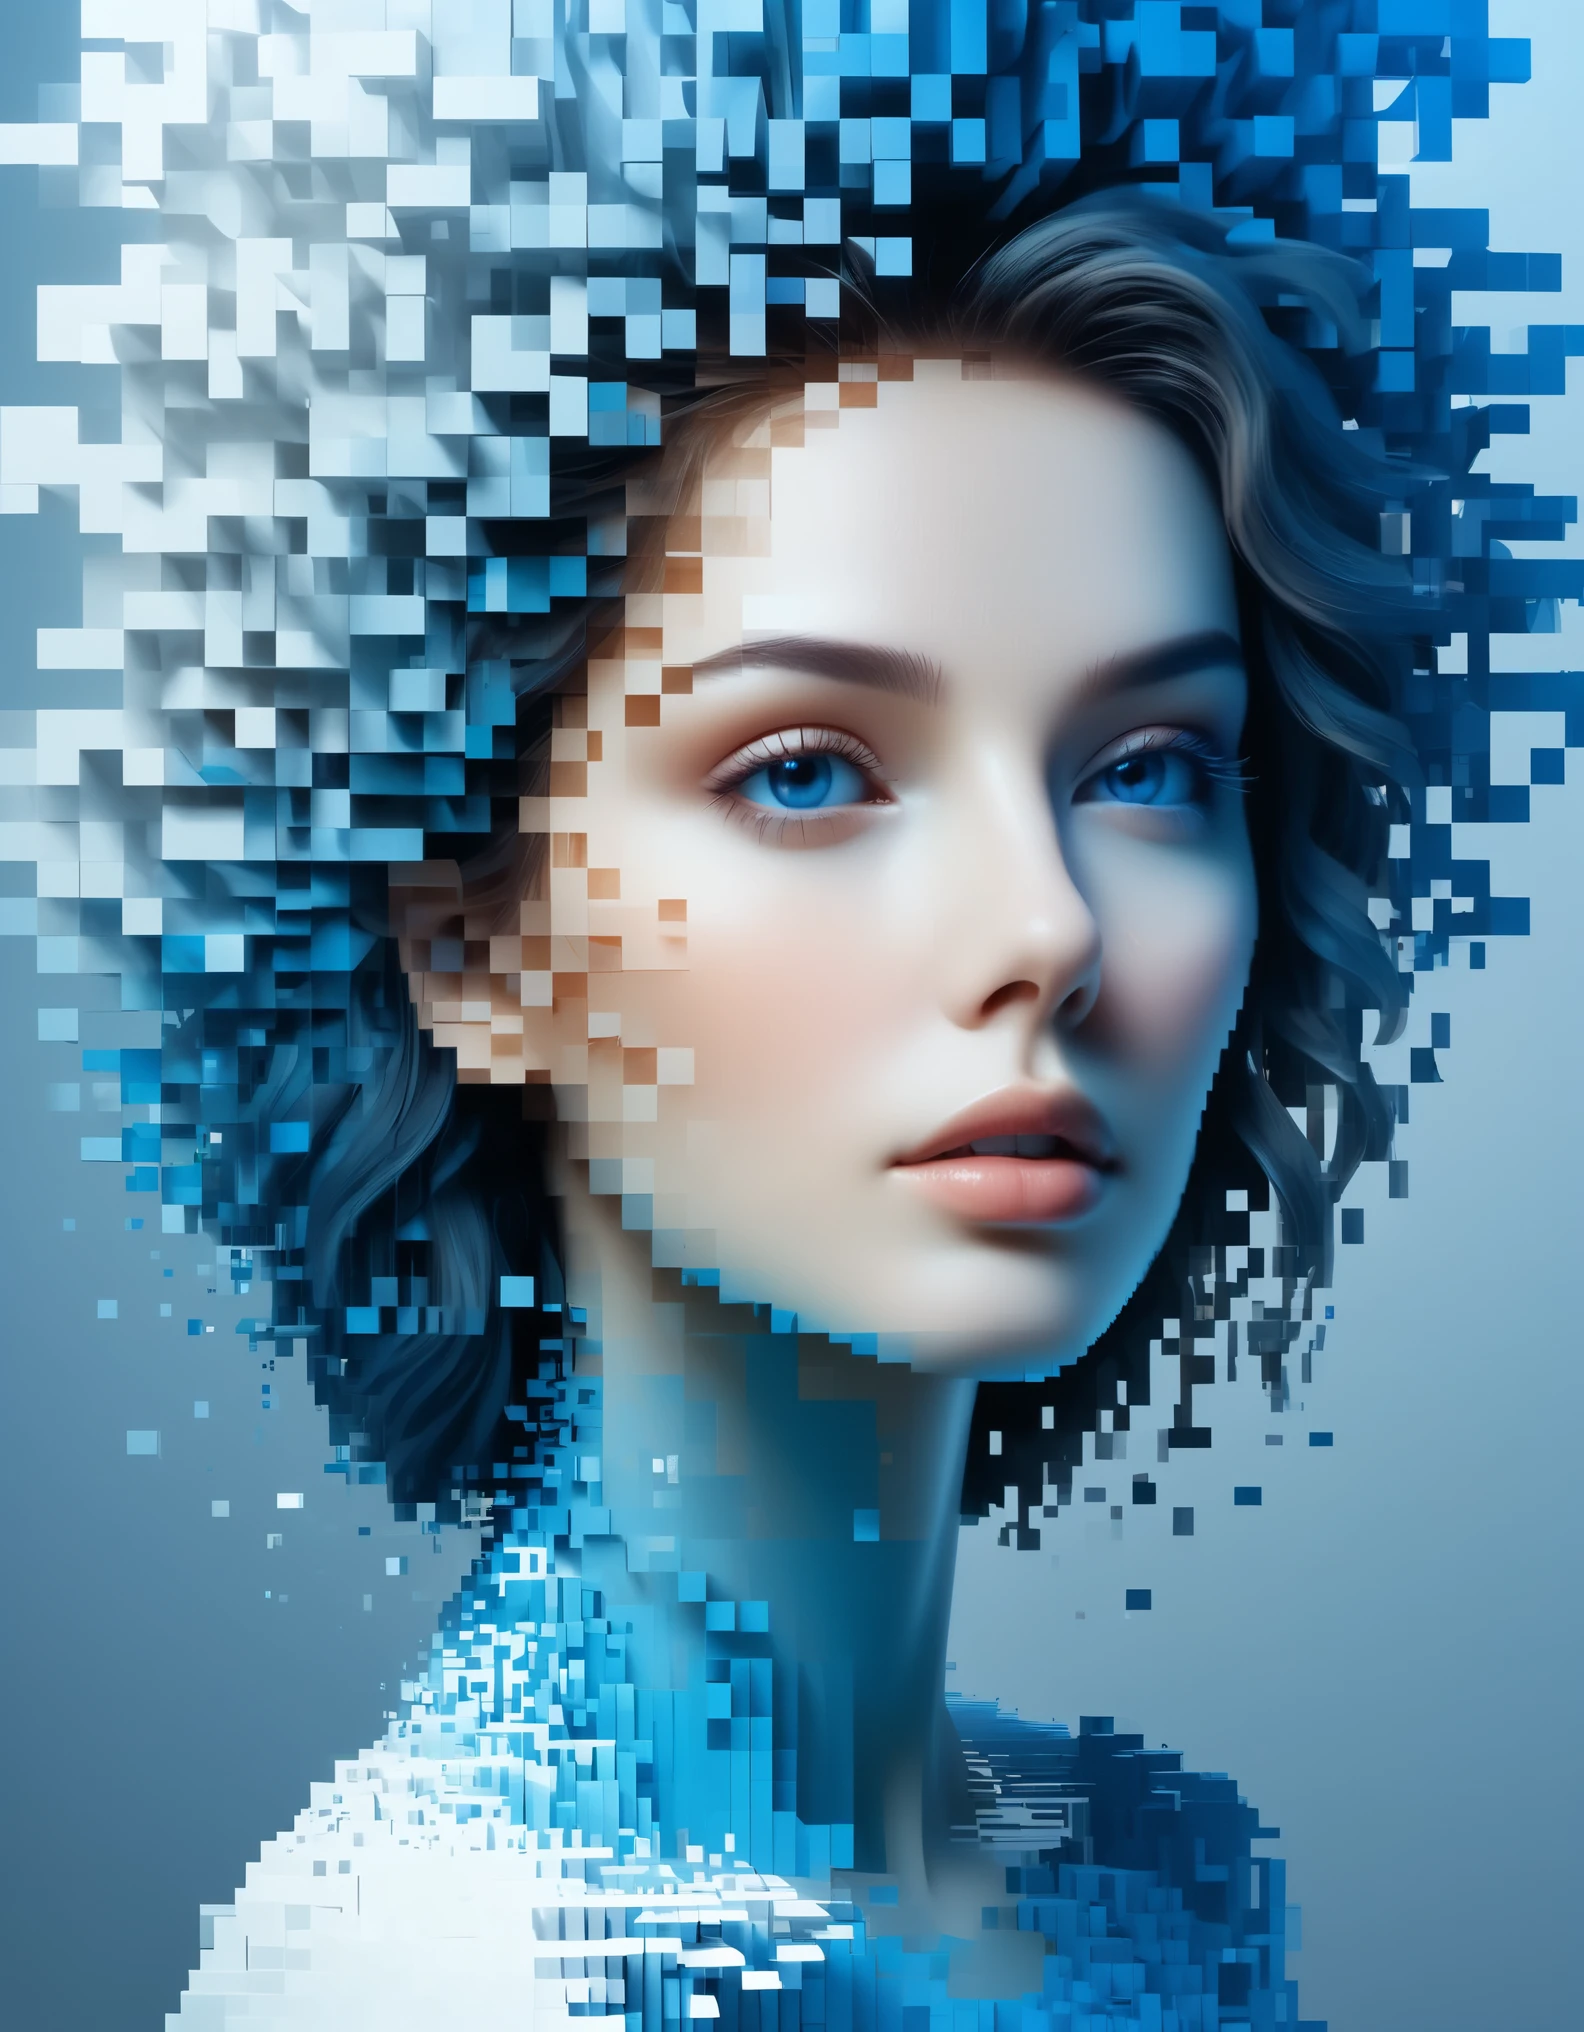 Синий градиент цвета растворил пиксельную стену красивой женщины&#39;голова，3D-воксельные блоки，Структура, которая изначально неповреждена, но постепенно распадается в воздухе.，Солнечный свет проникает сквозь частично выдолбленный，Фоновое пространство голографической вселенной